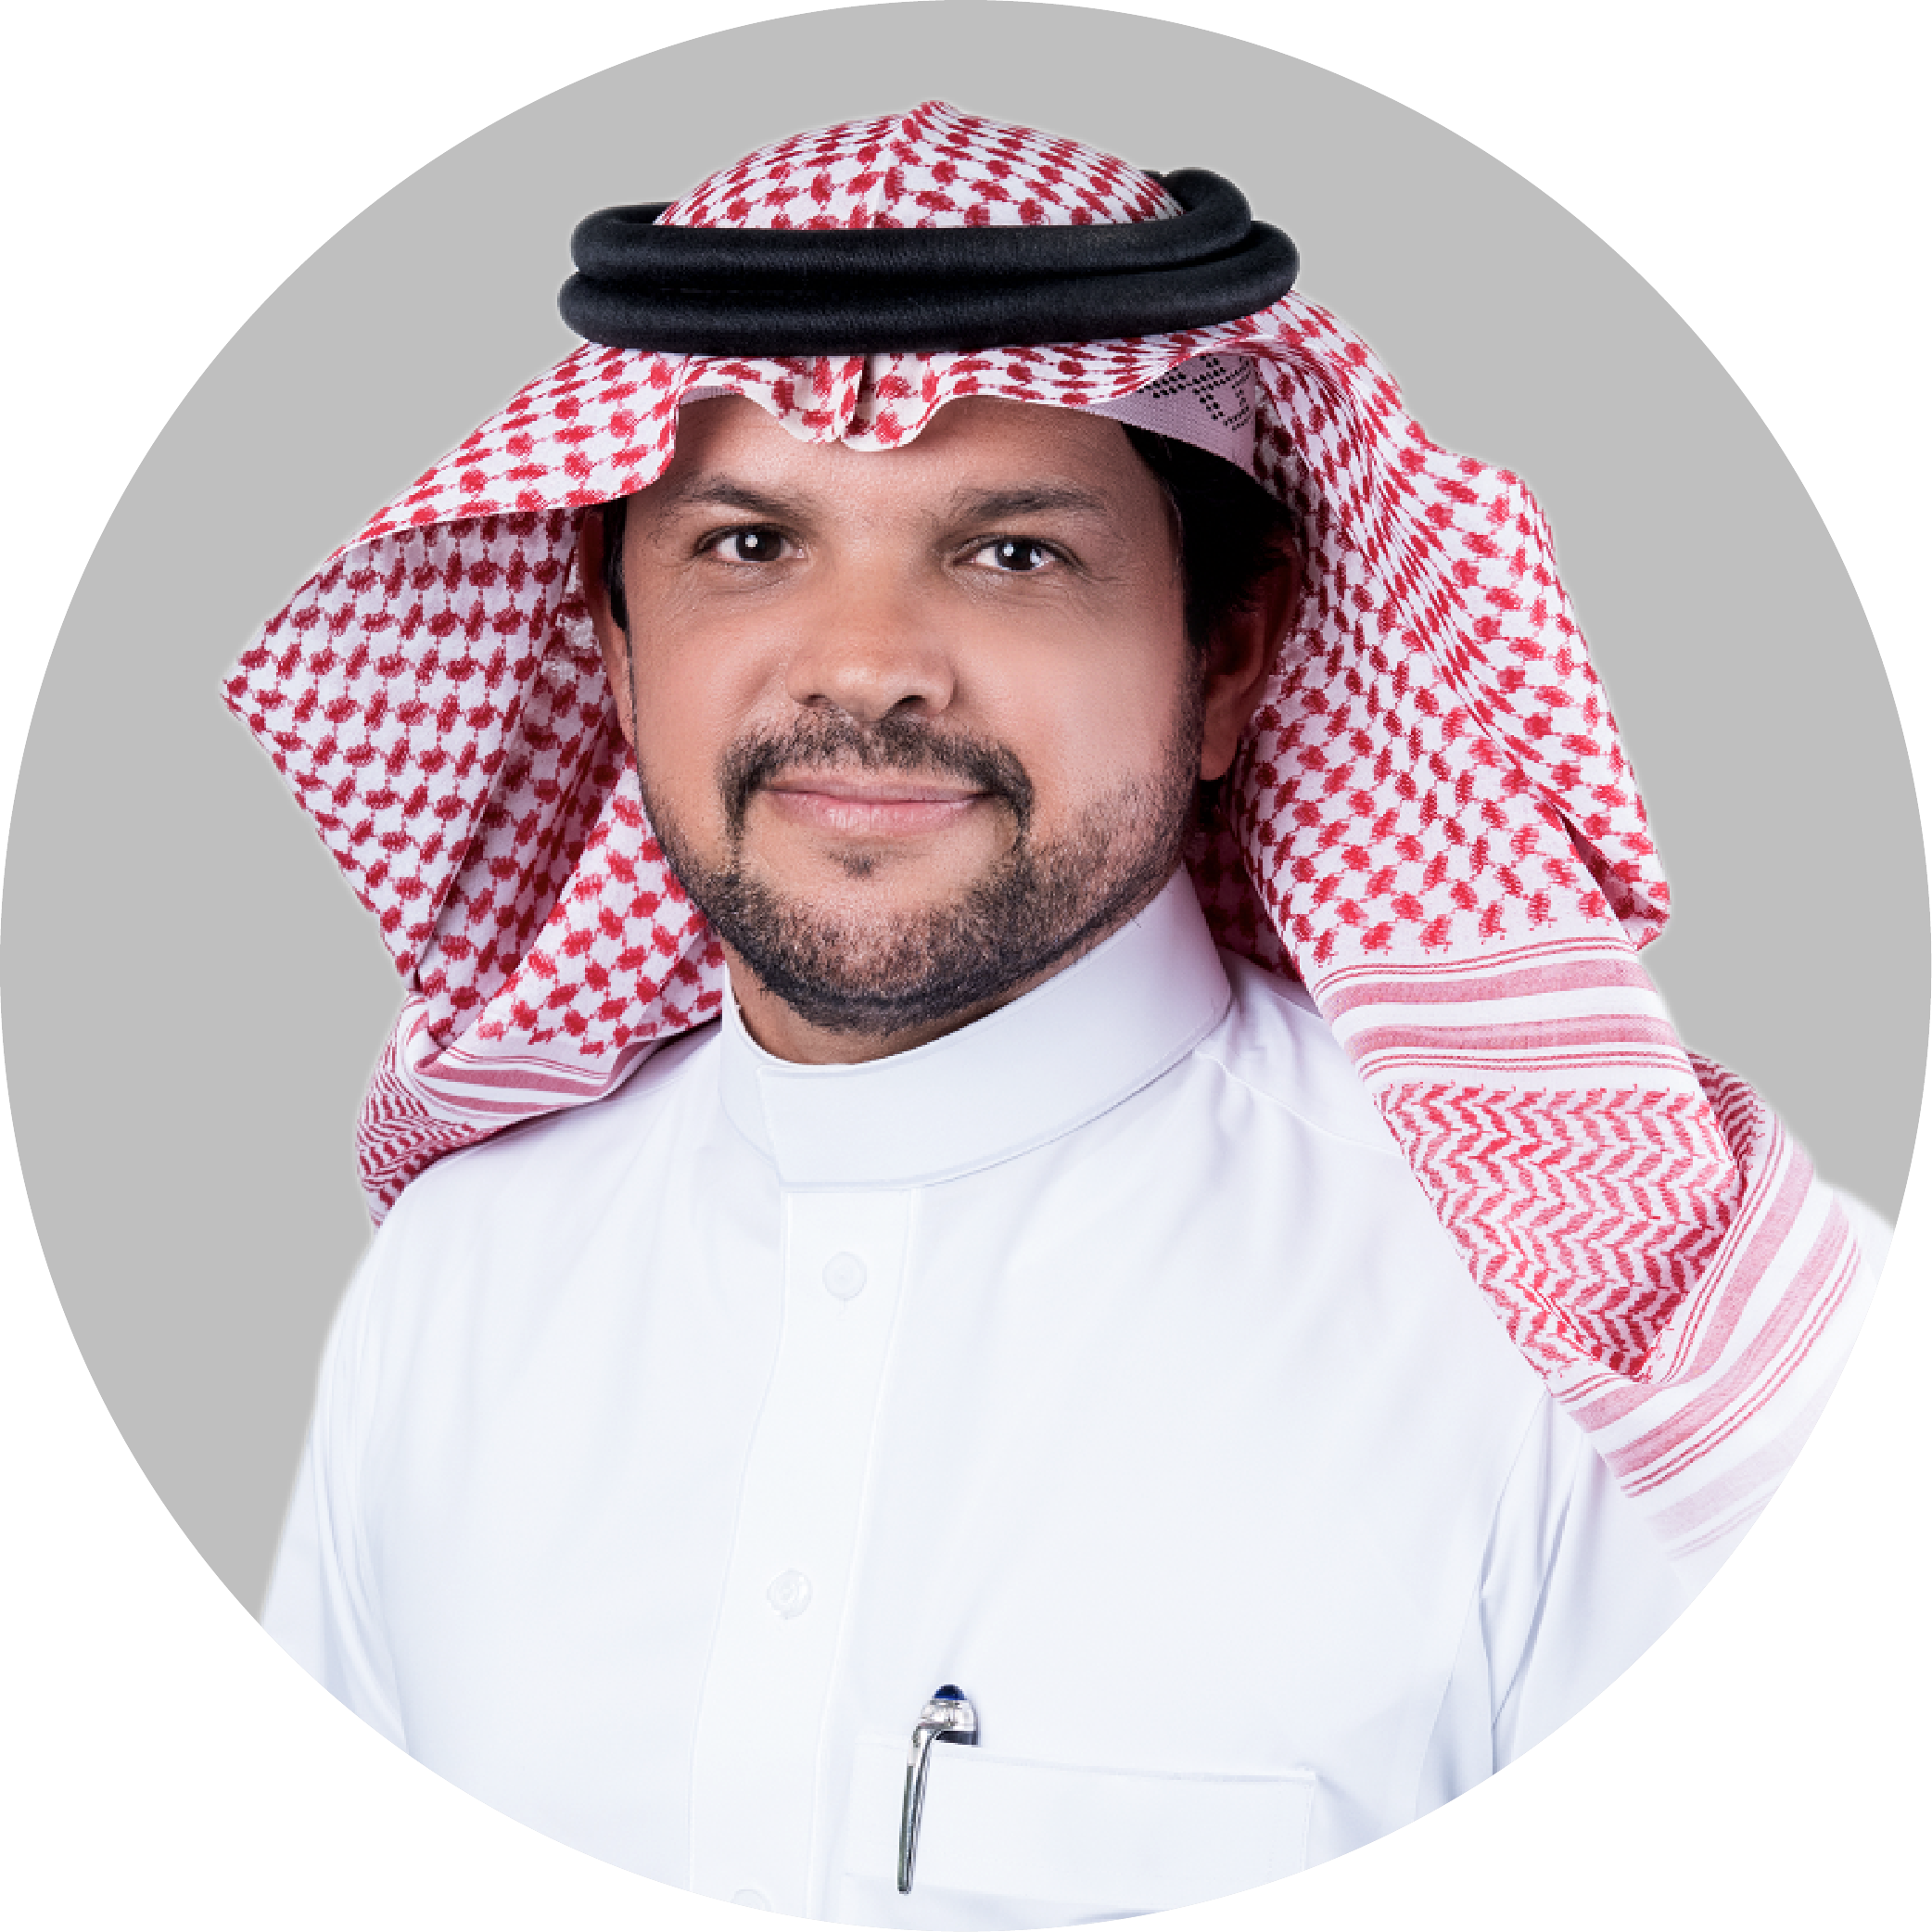 Dr. Abdullah Bin Abdulrahman Alnamlah